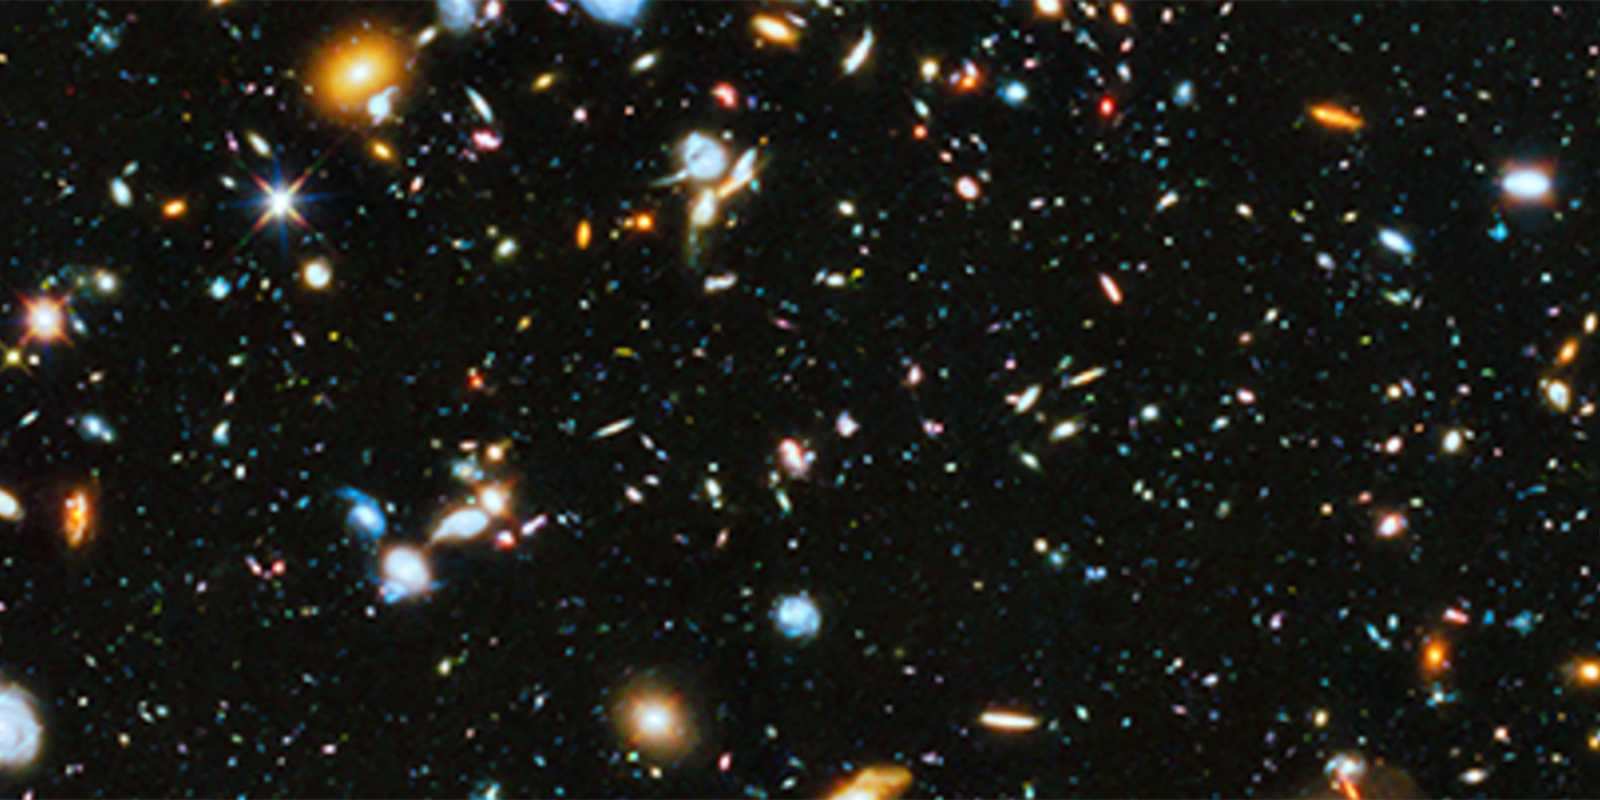 Hubble deep field 1600x800